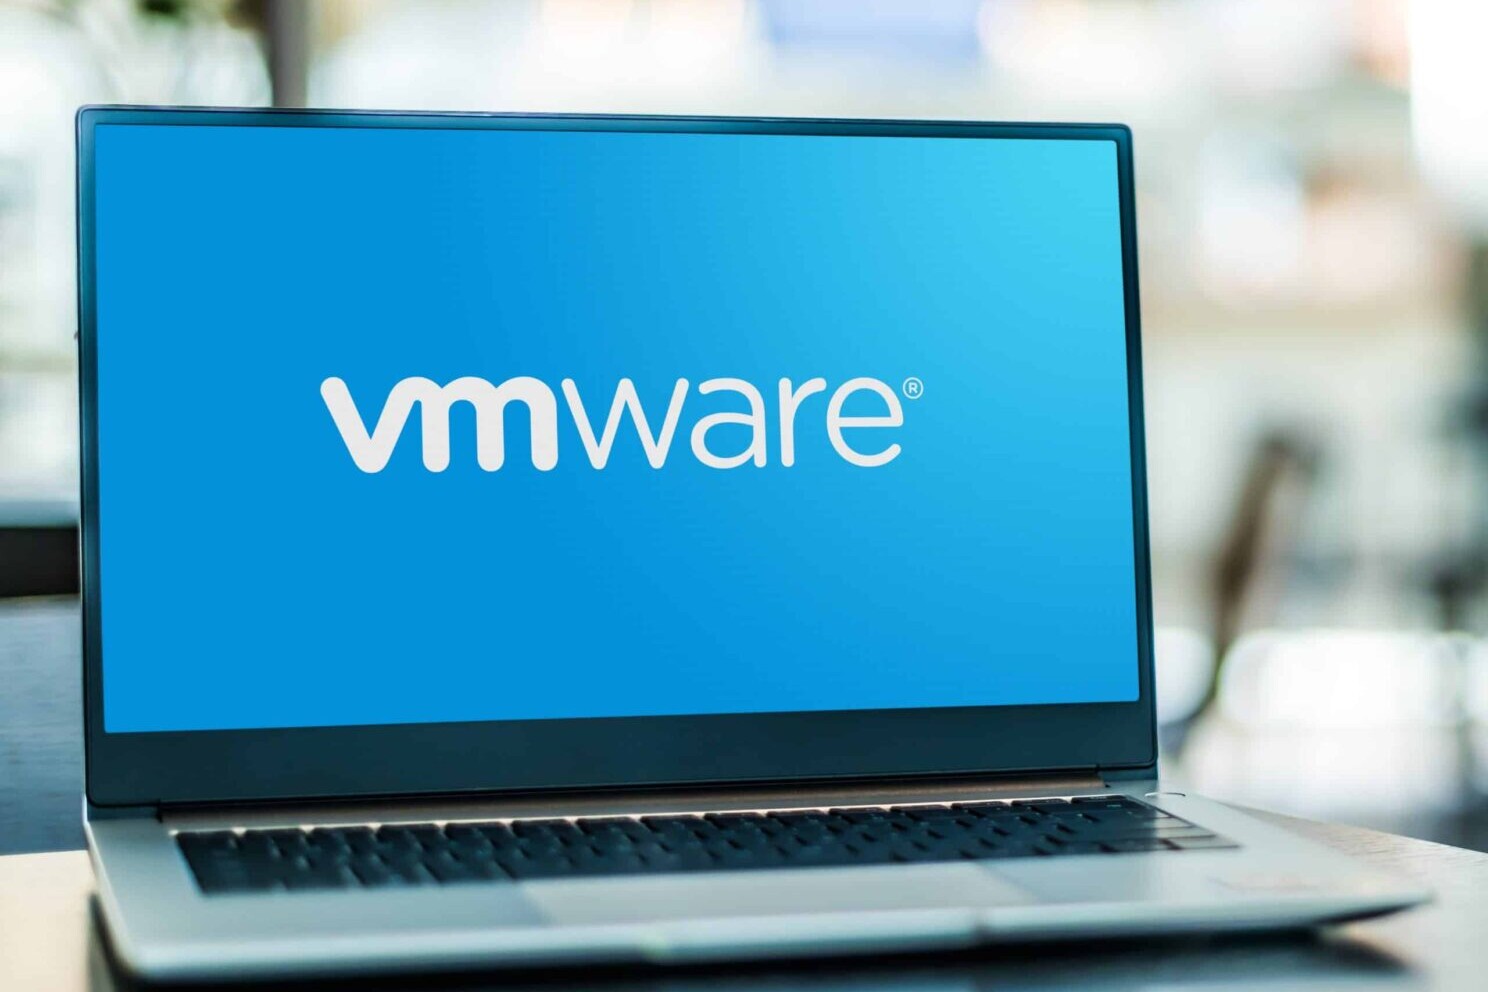 VMware vulnerability closed